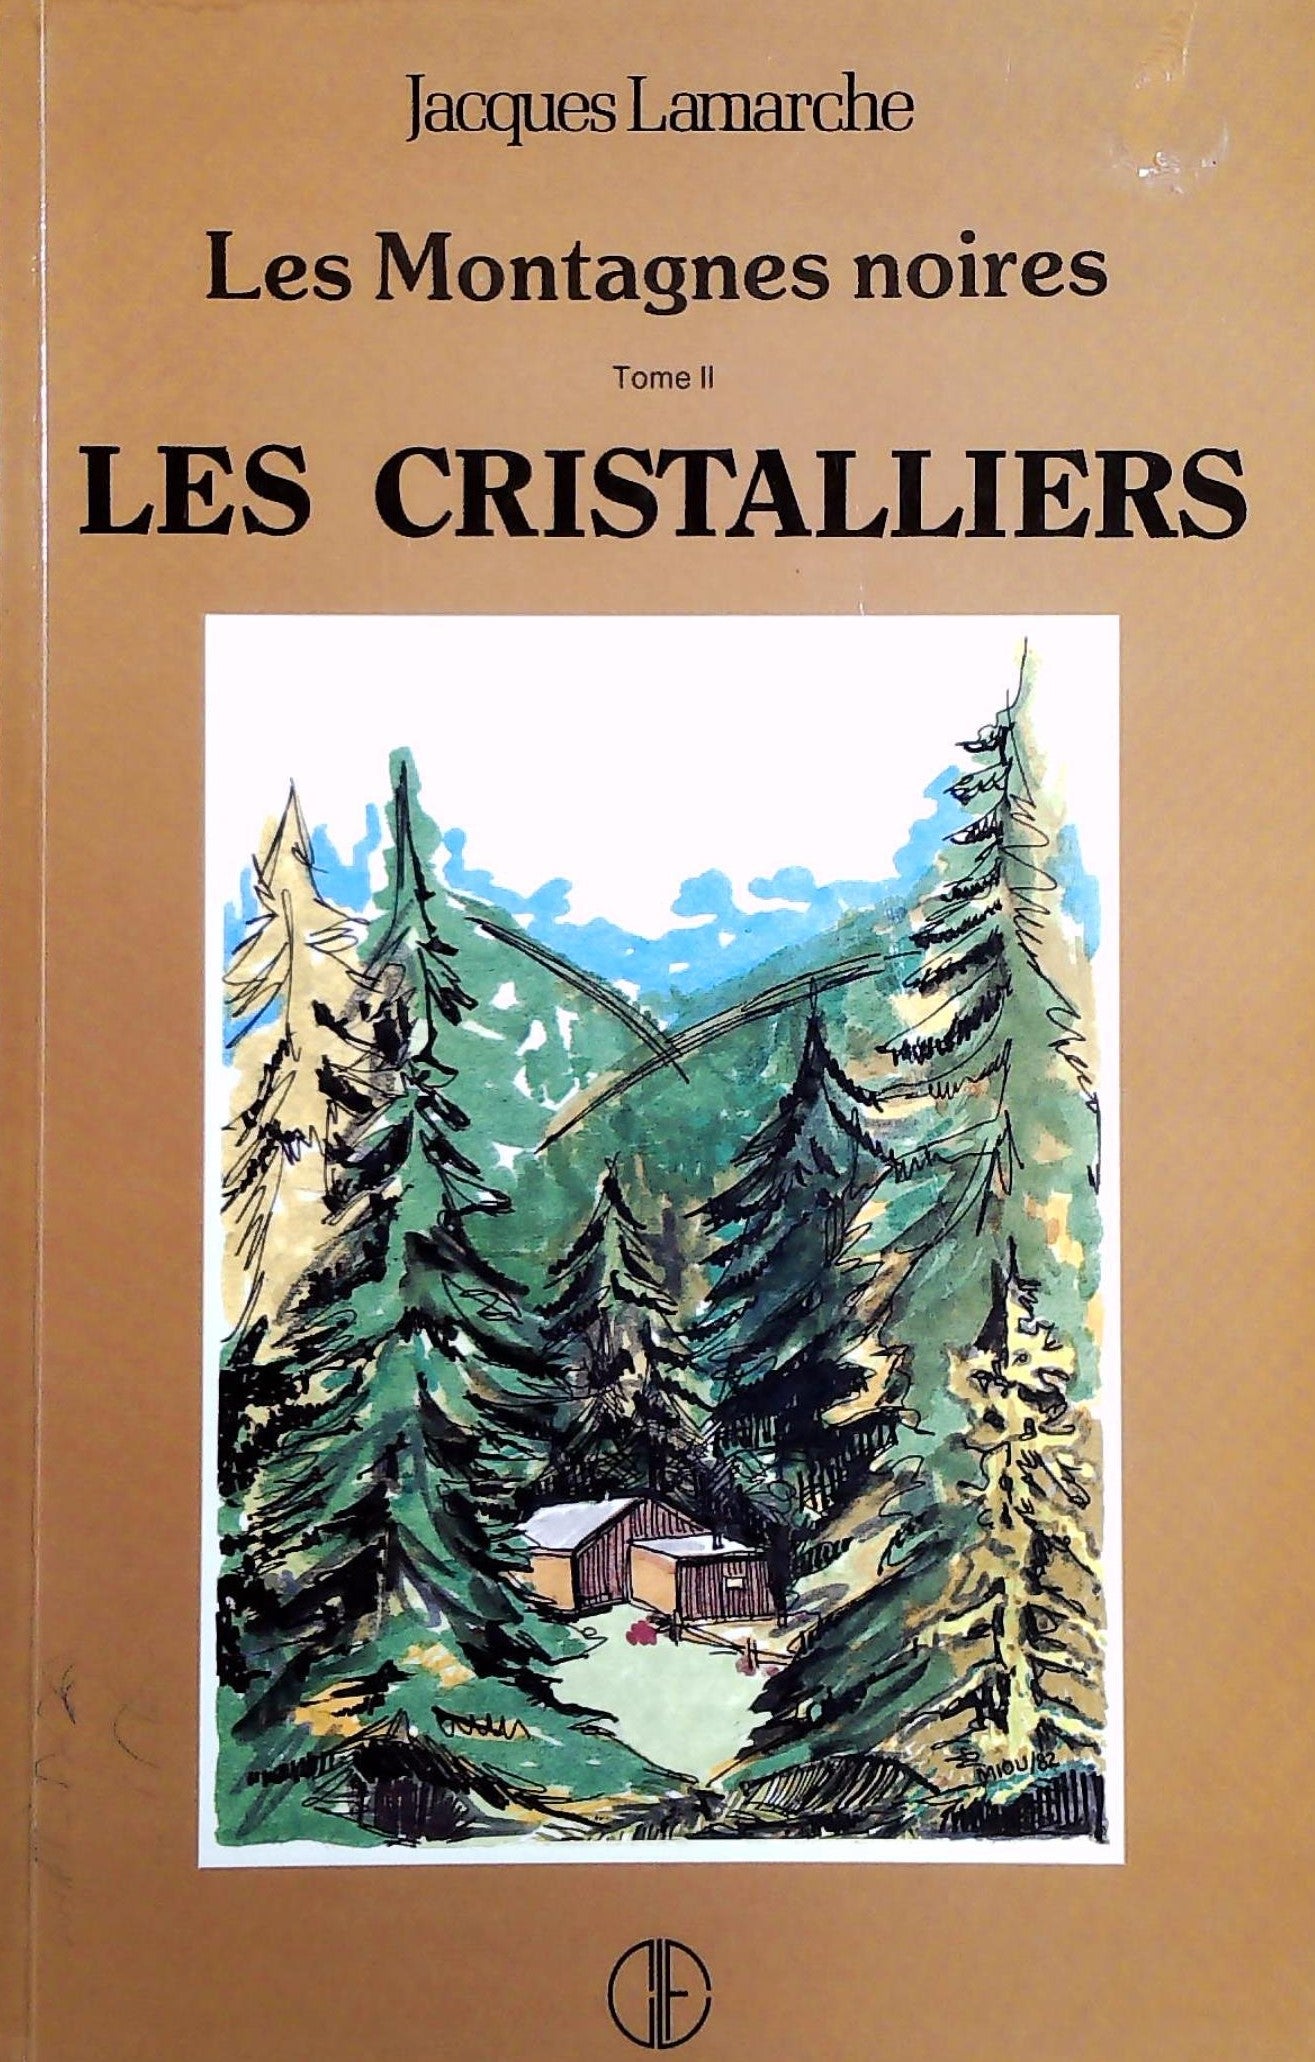 Livre ISBN 2890511014 Les montagnes noires # 2 : Les cristalliers (Jacques Lamarche)